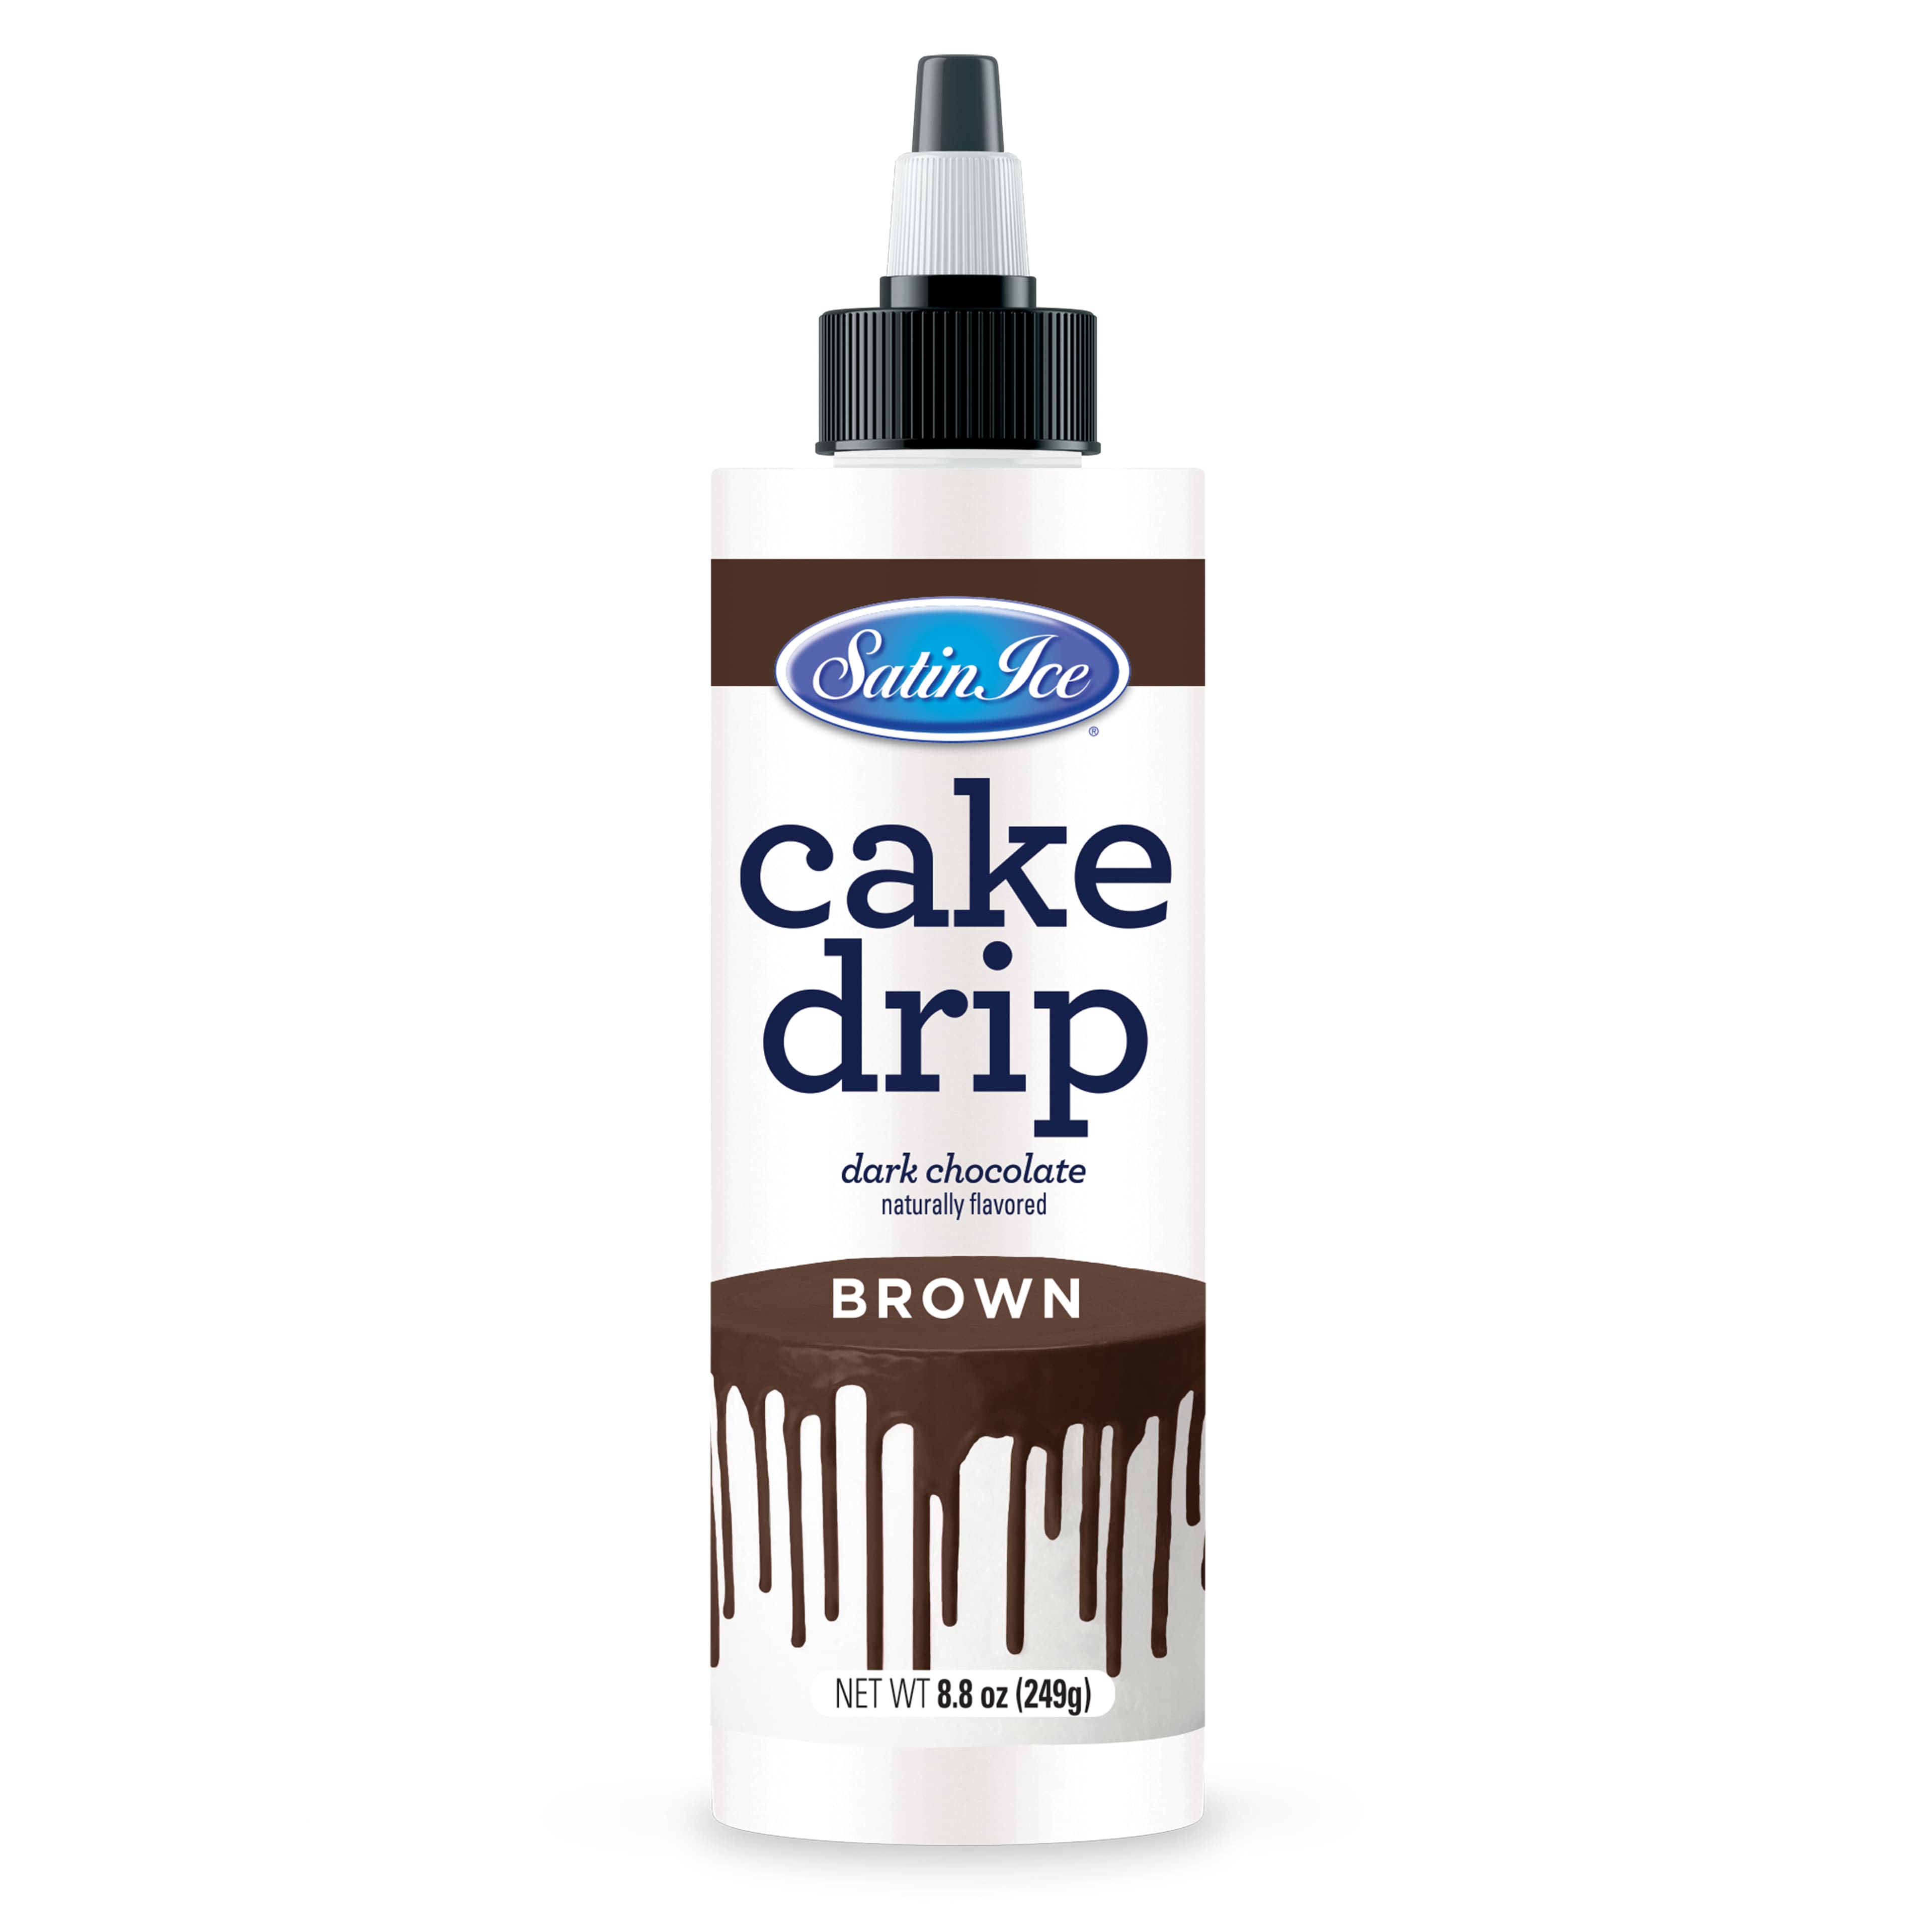 Satin Ice® White Chocolate Cake Drip